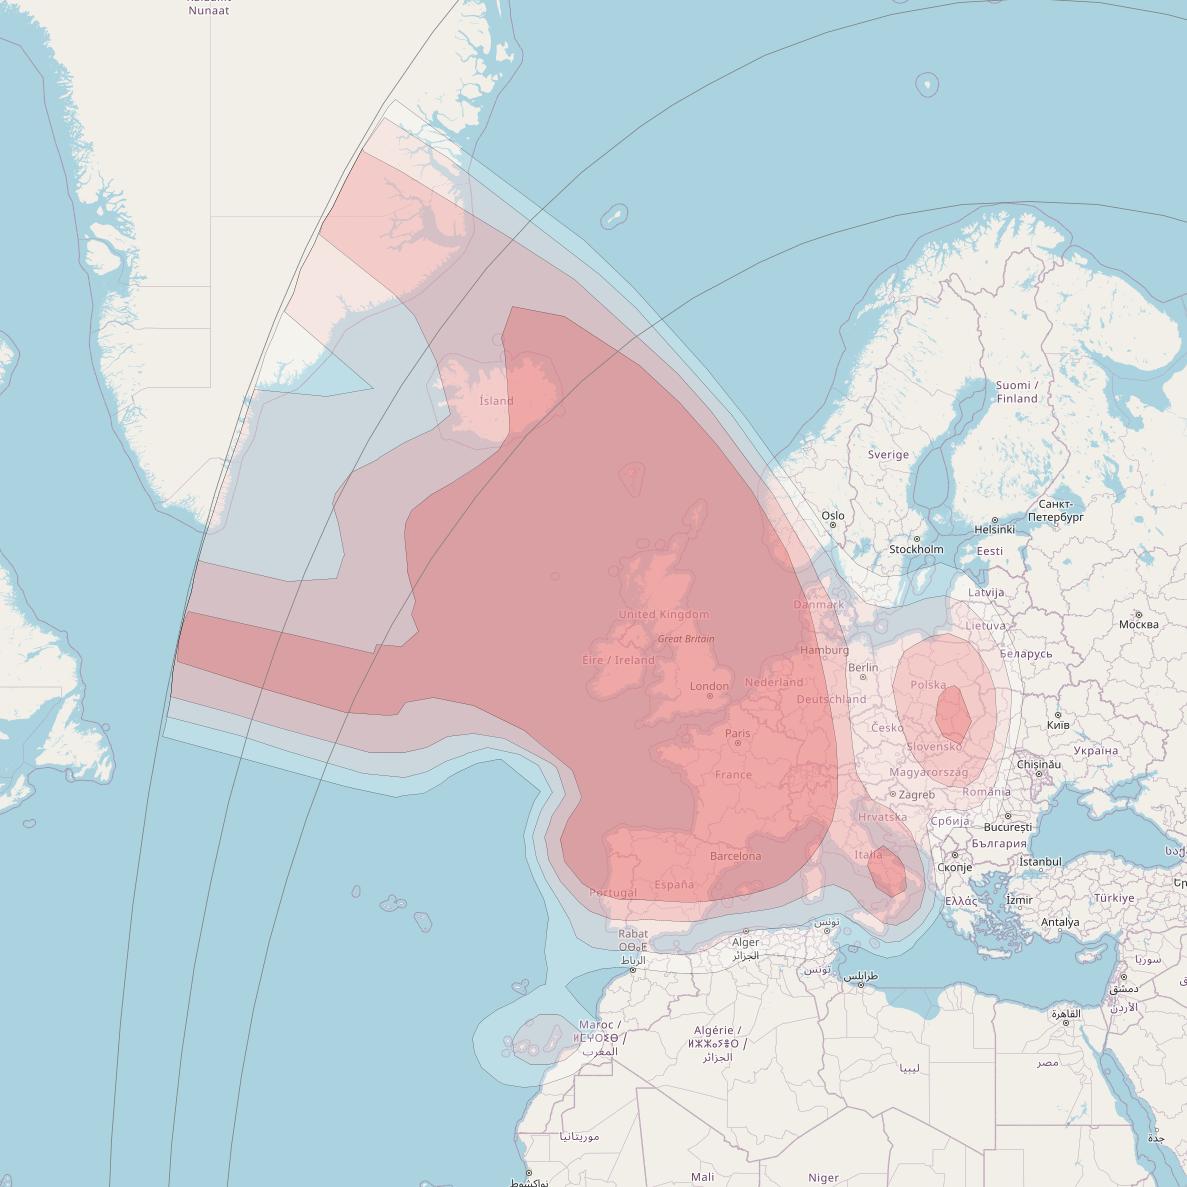 Astra 2E at 28° E downlink Ku-band Europe beam coverage map